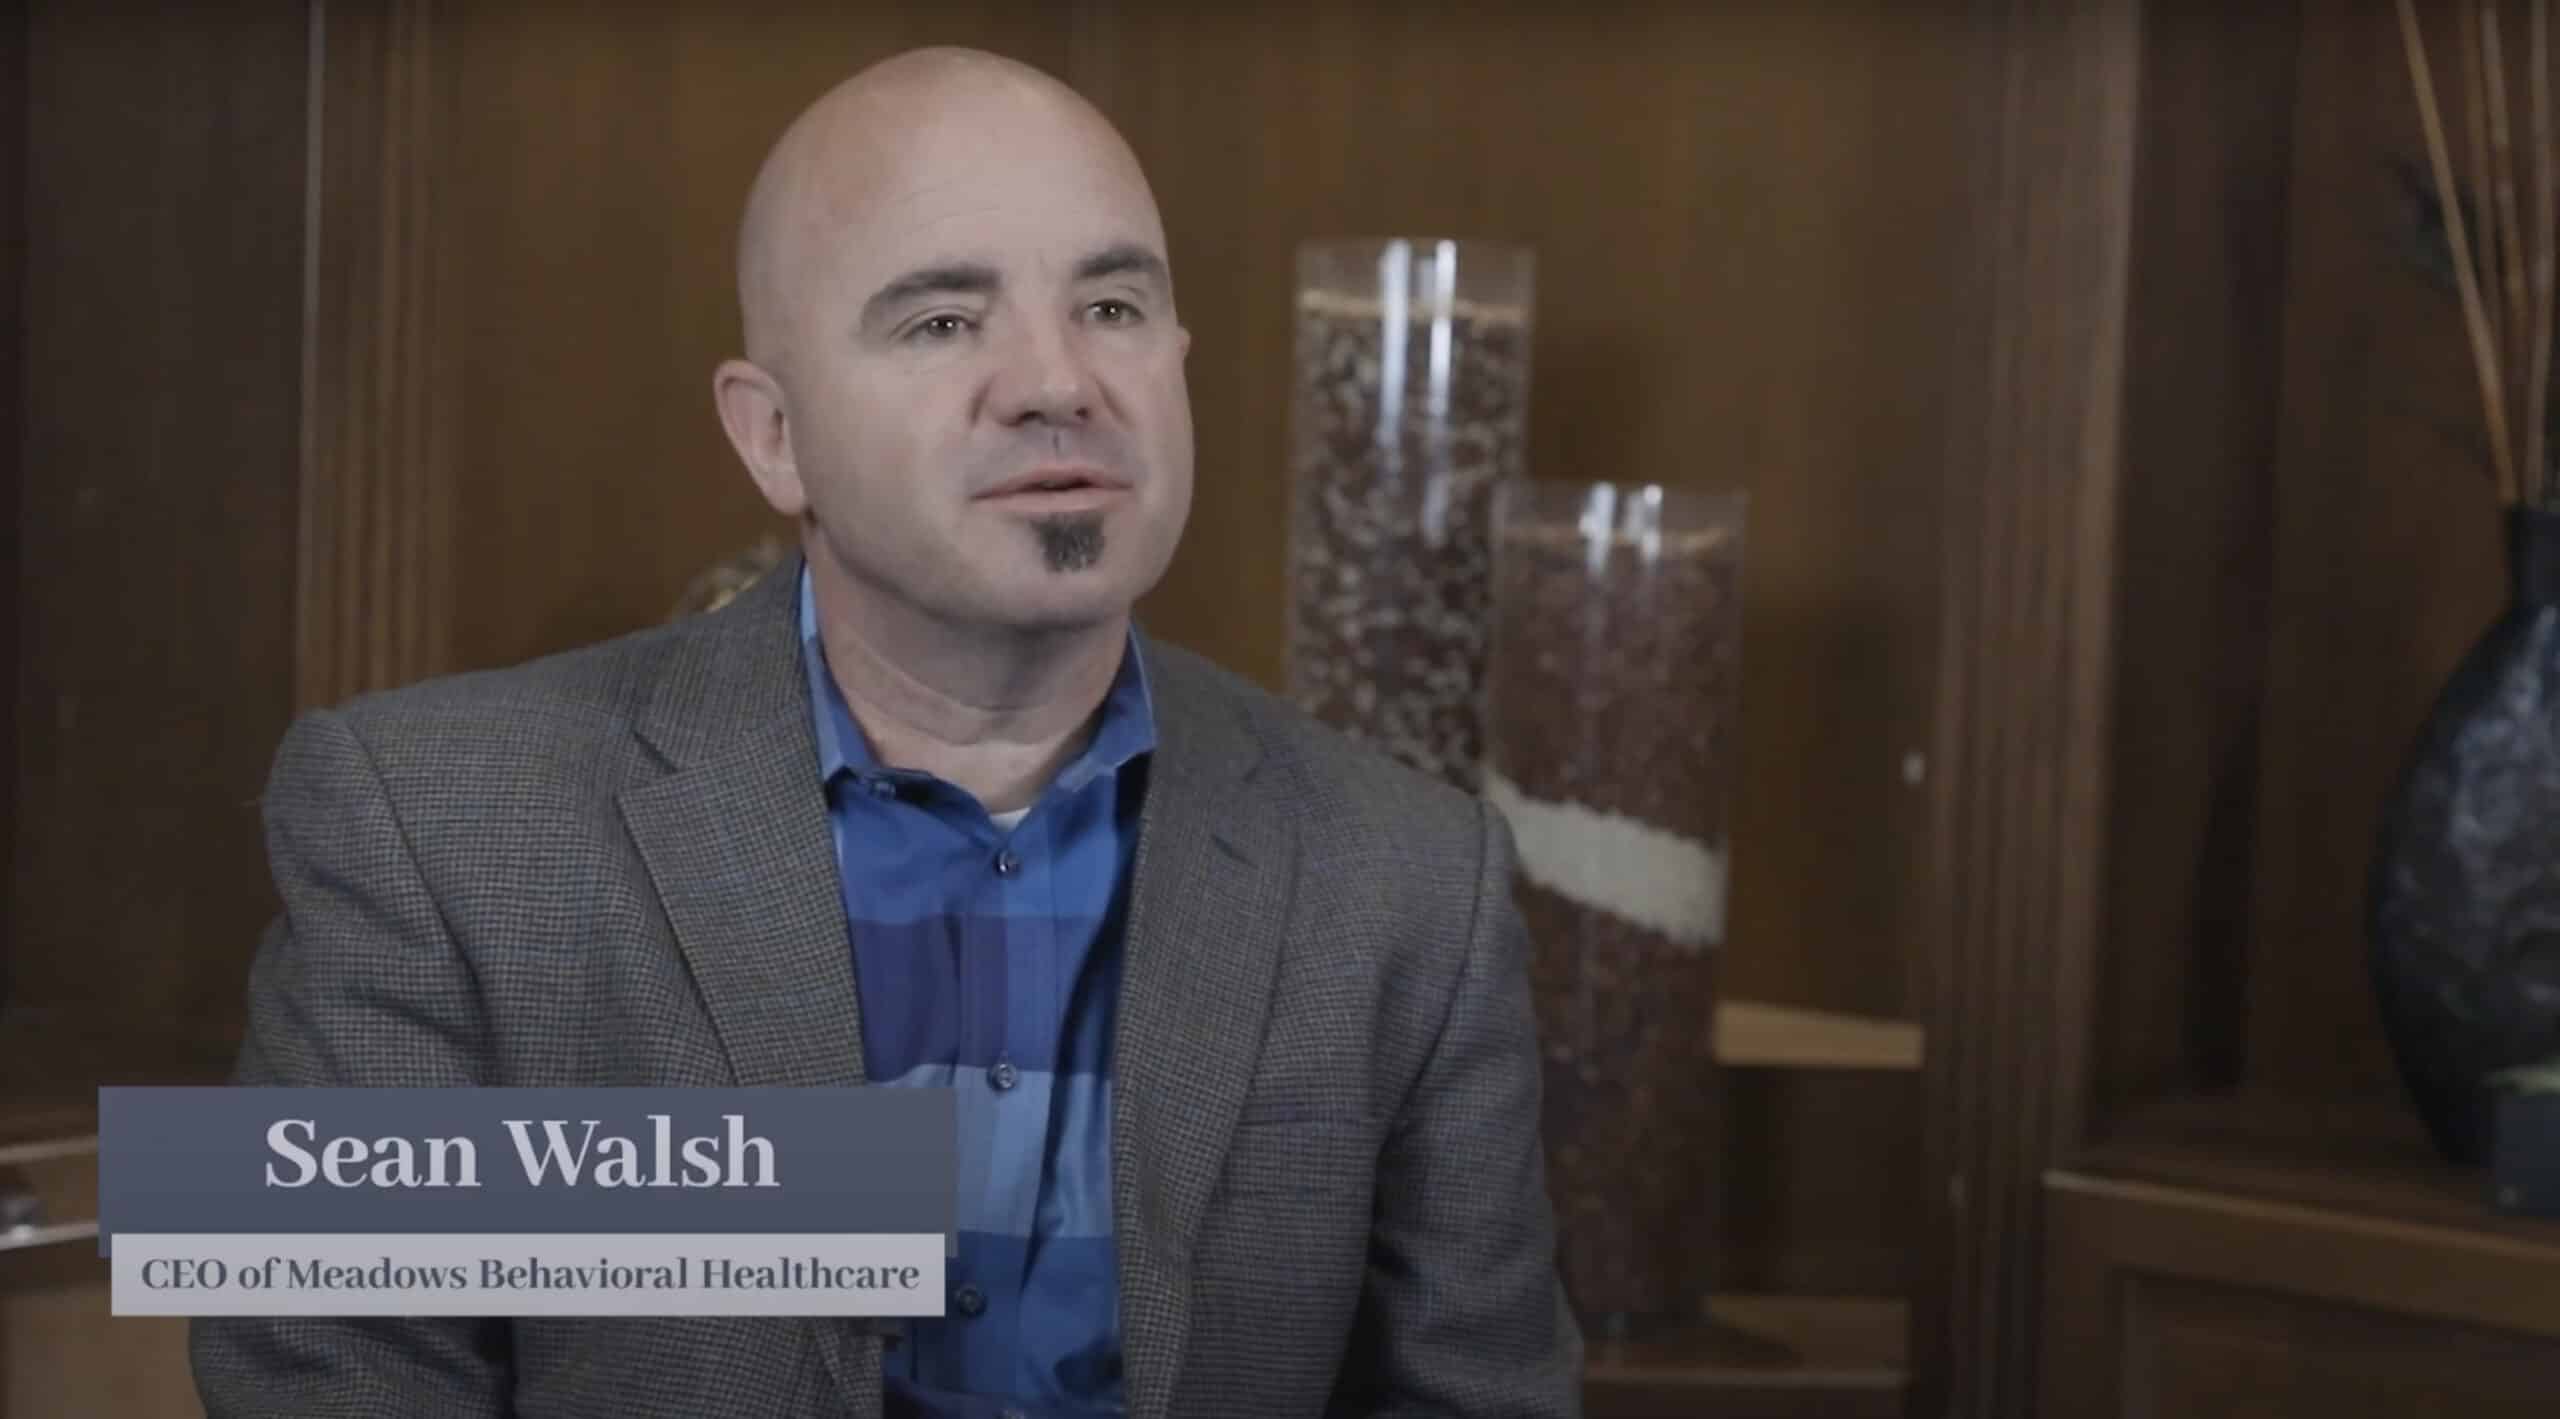 Sean Walsh, CEO of Meadows Behavioral Healthcare